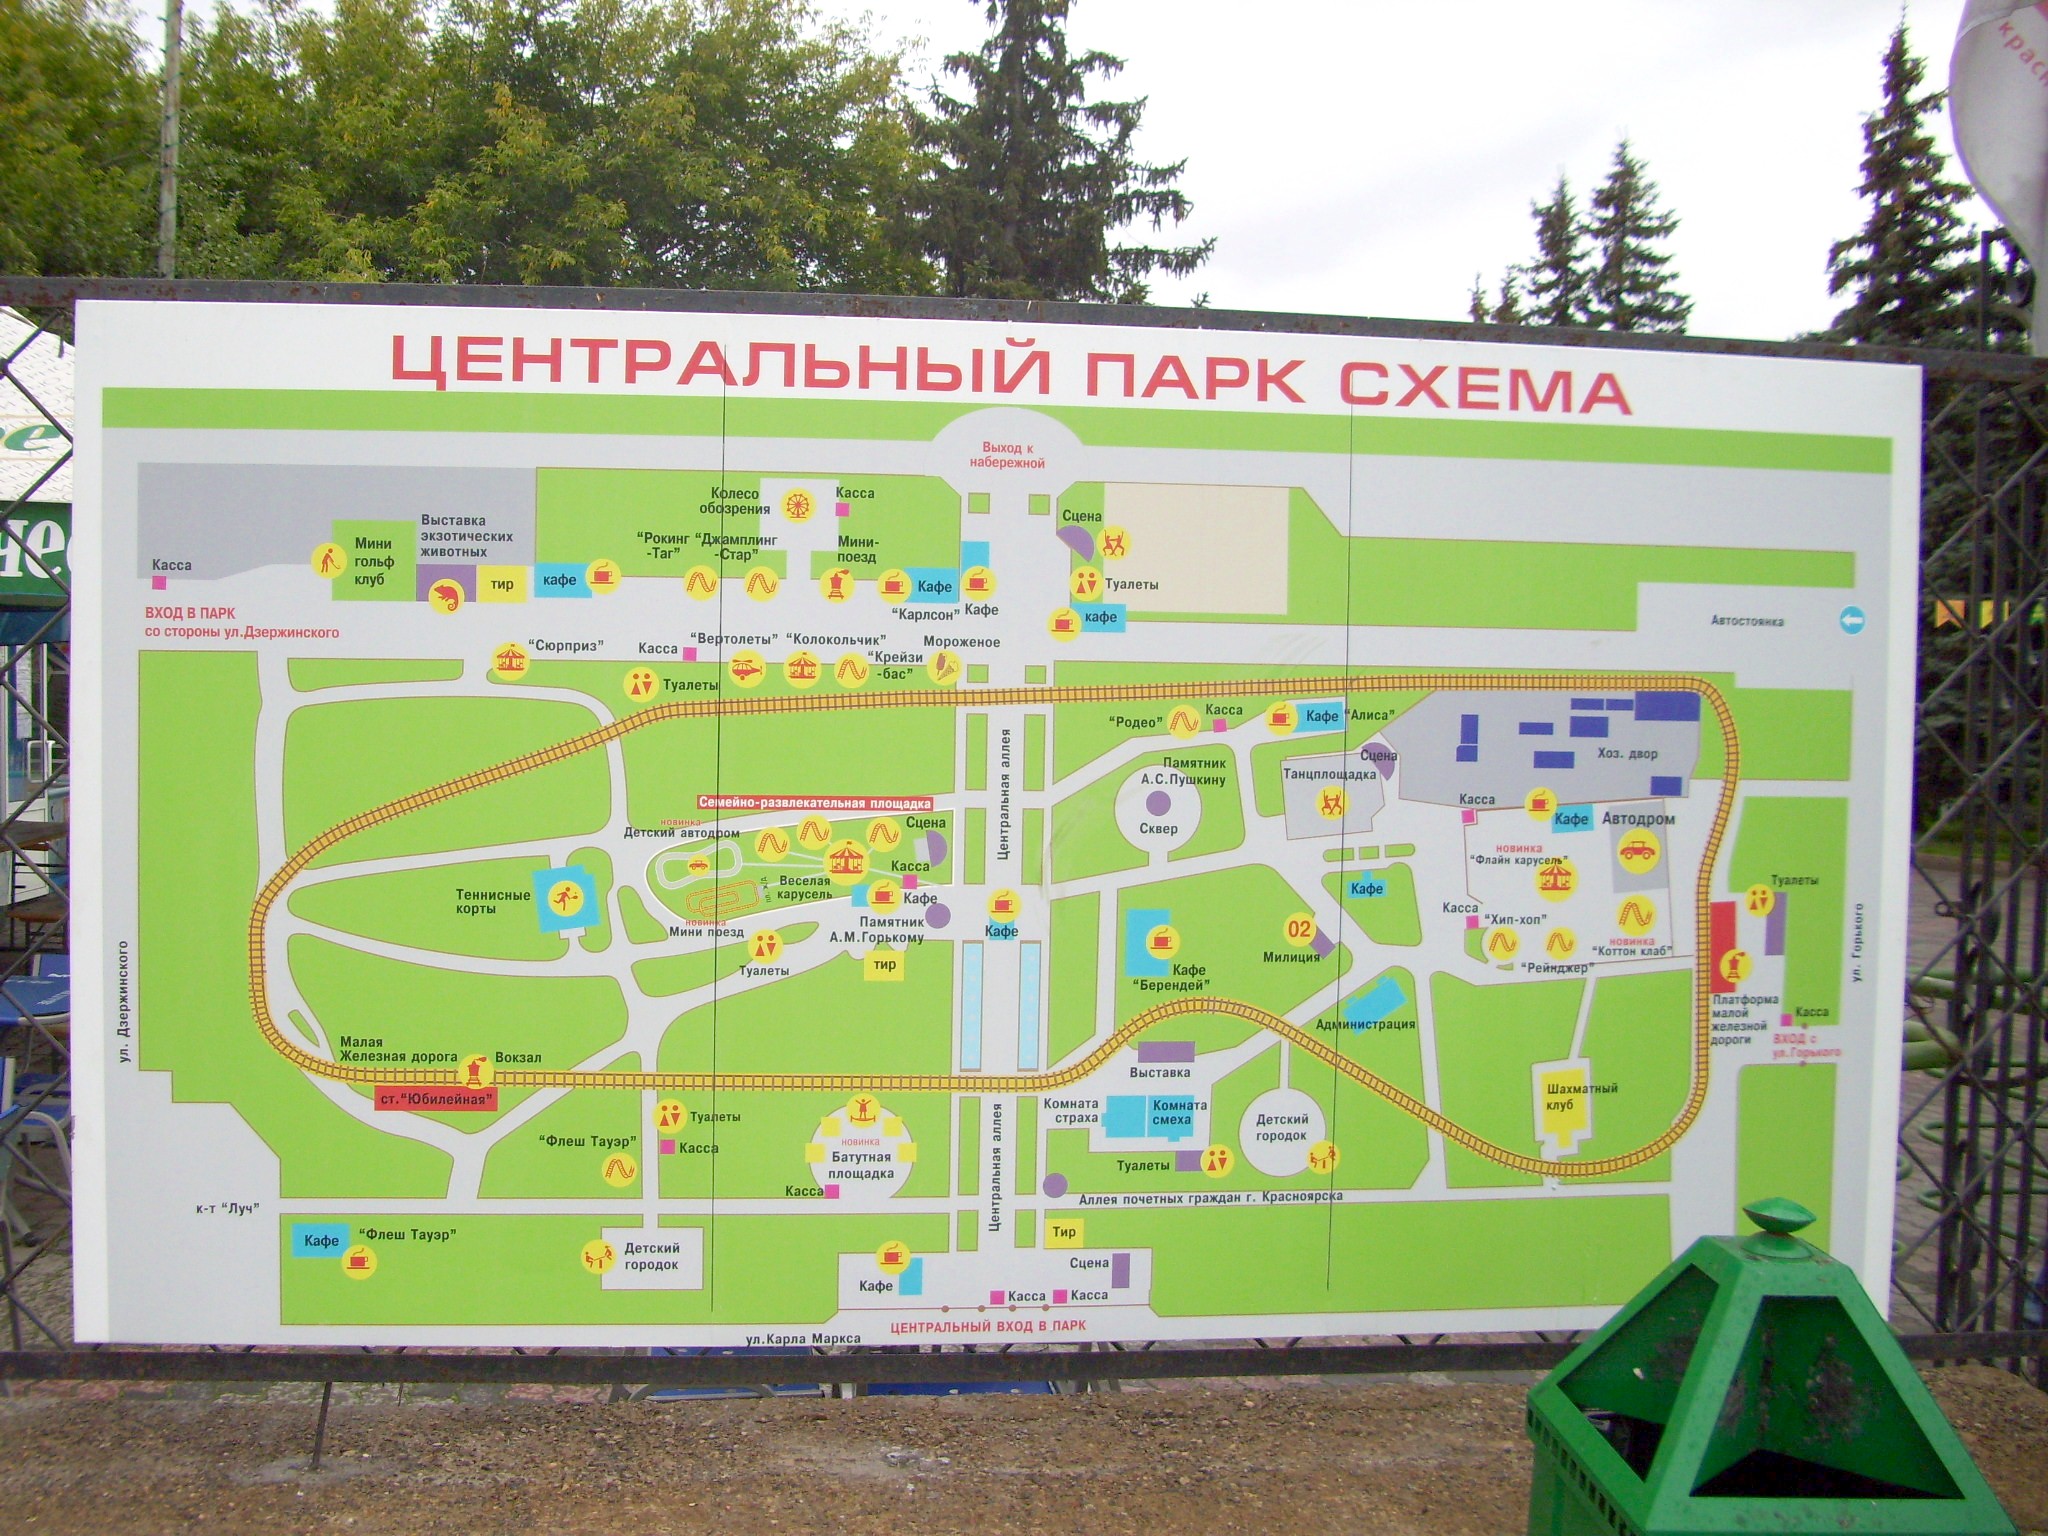 Красноярская детская железная дорога  —  фотографии, сделанные в 2009 году (часть 1)